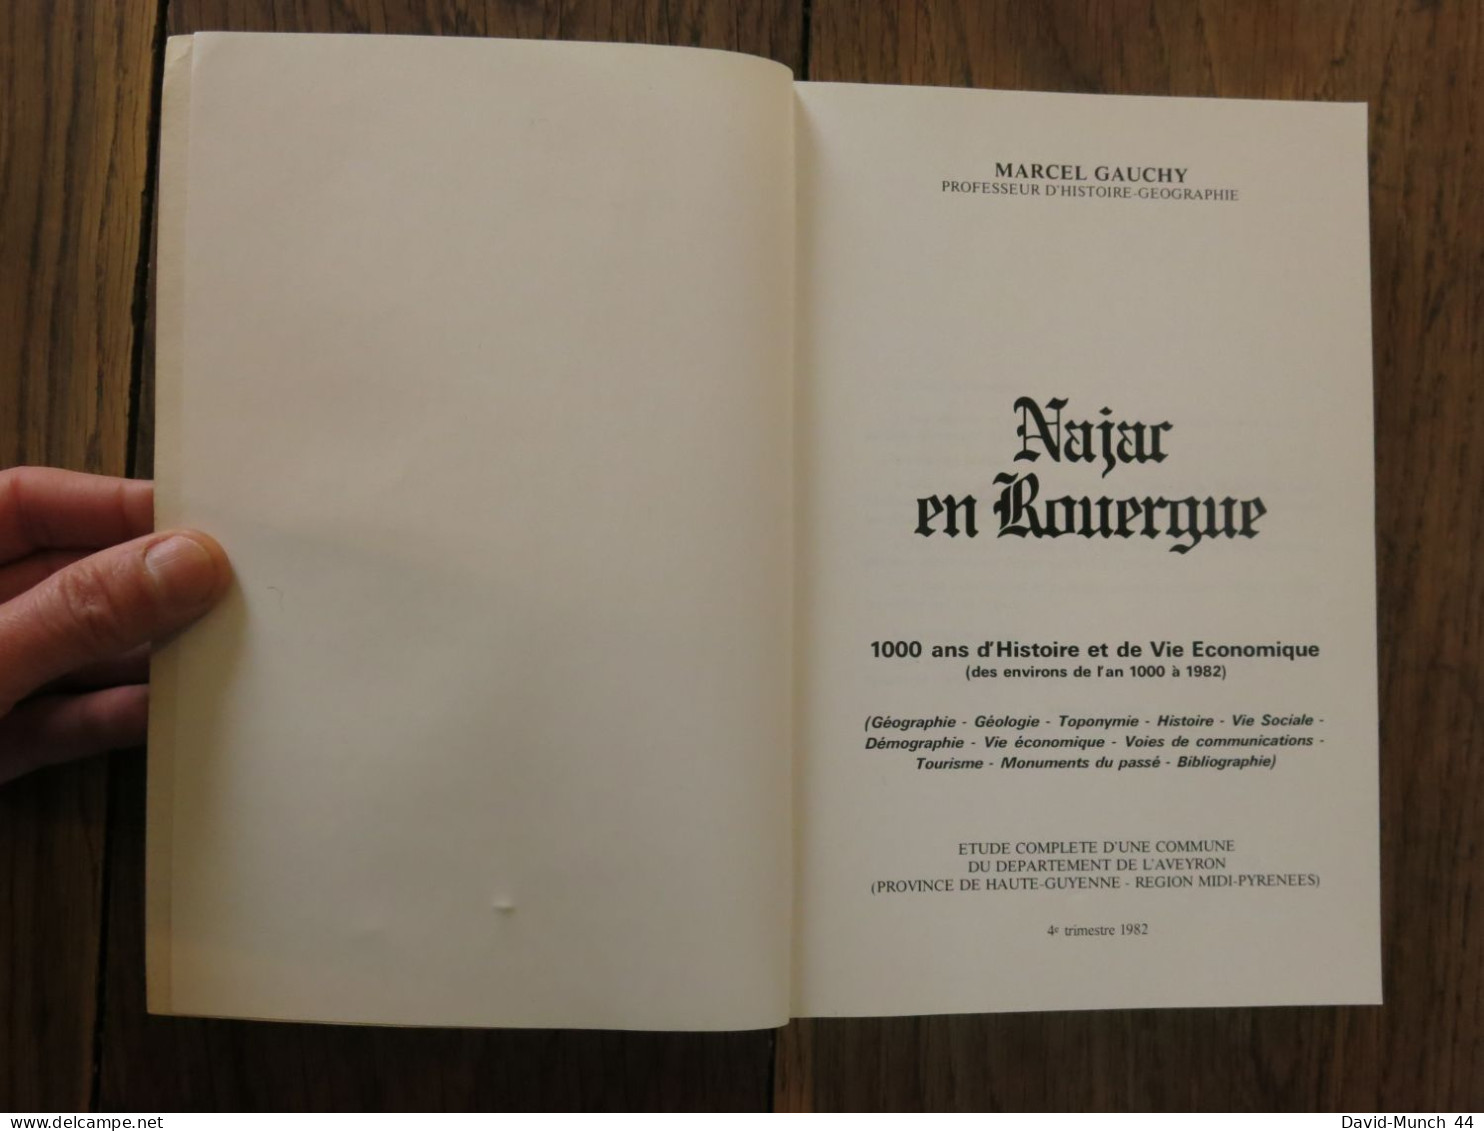 Najac En Rouergue. 1000 Ans D'histoire Et De Vie économique De Marcel Gauchy. 1982 - Midi-Pyrénées